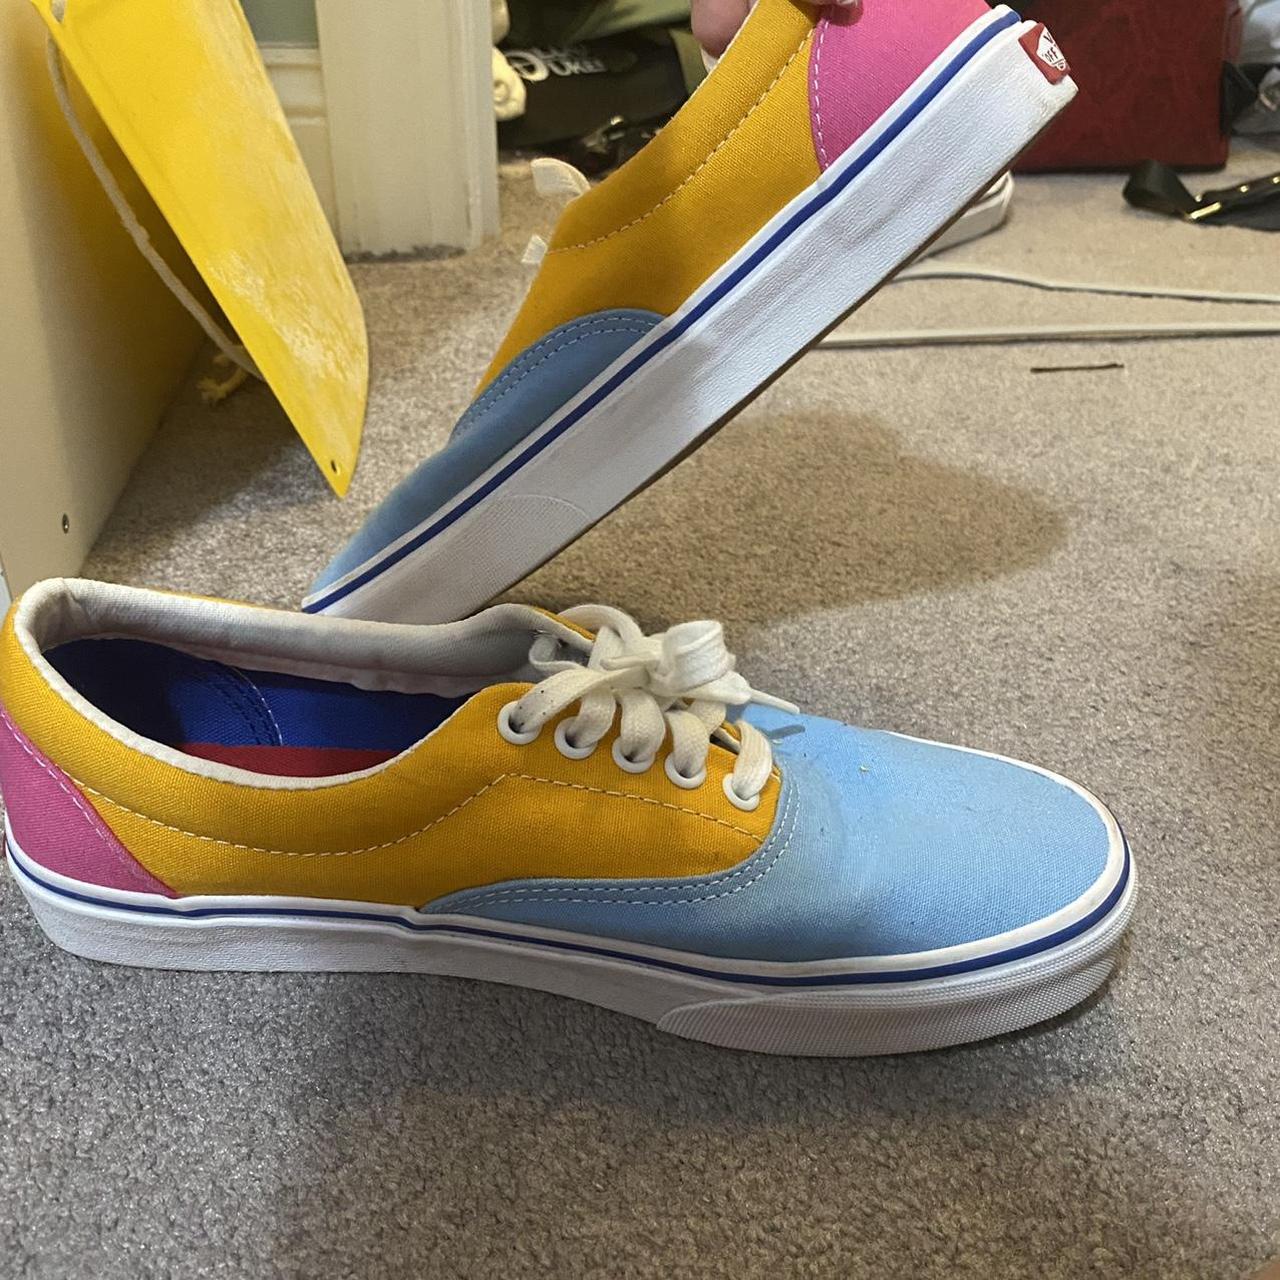 Vans Shoes Color/Bright, size 10 women 8.5... - Depop